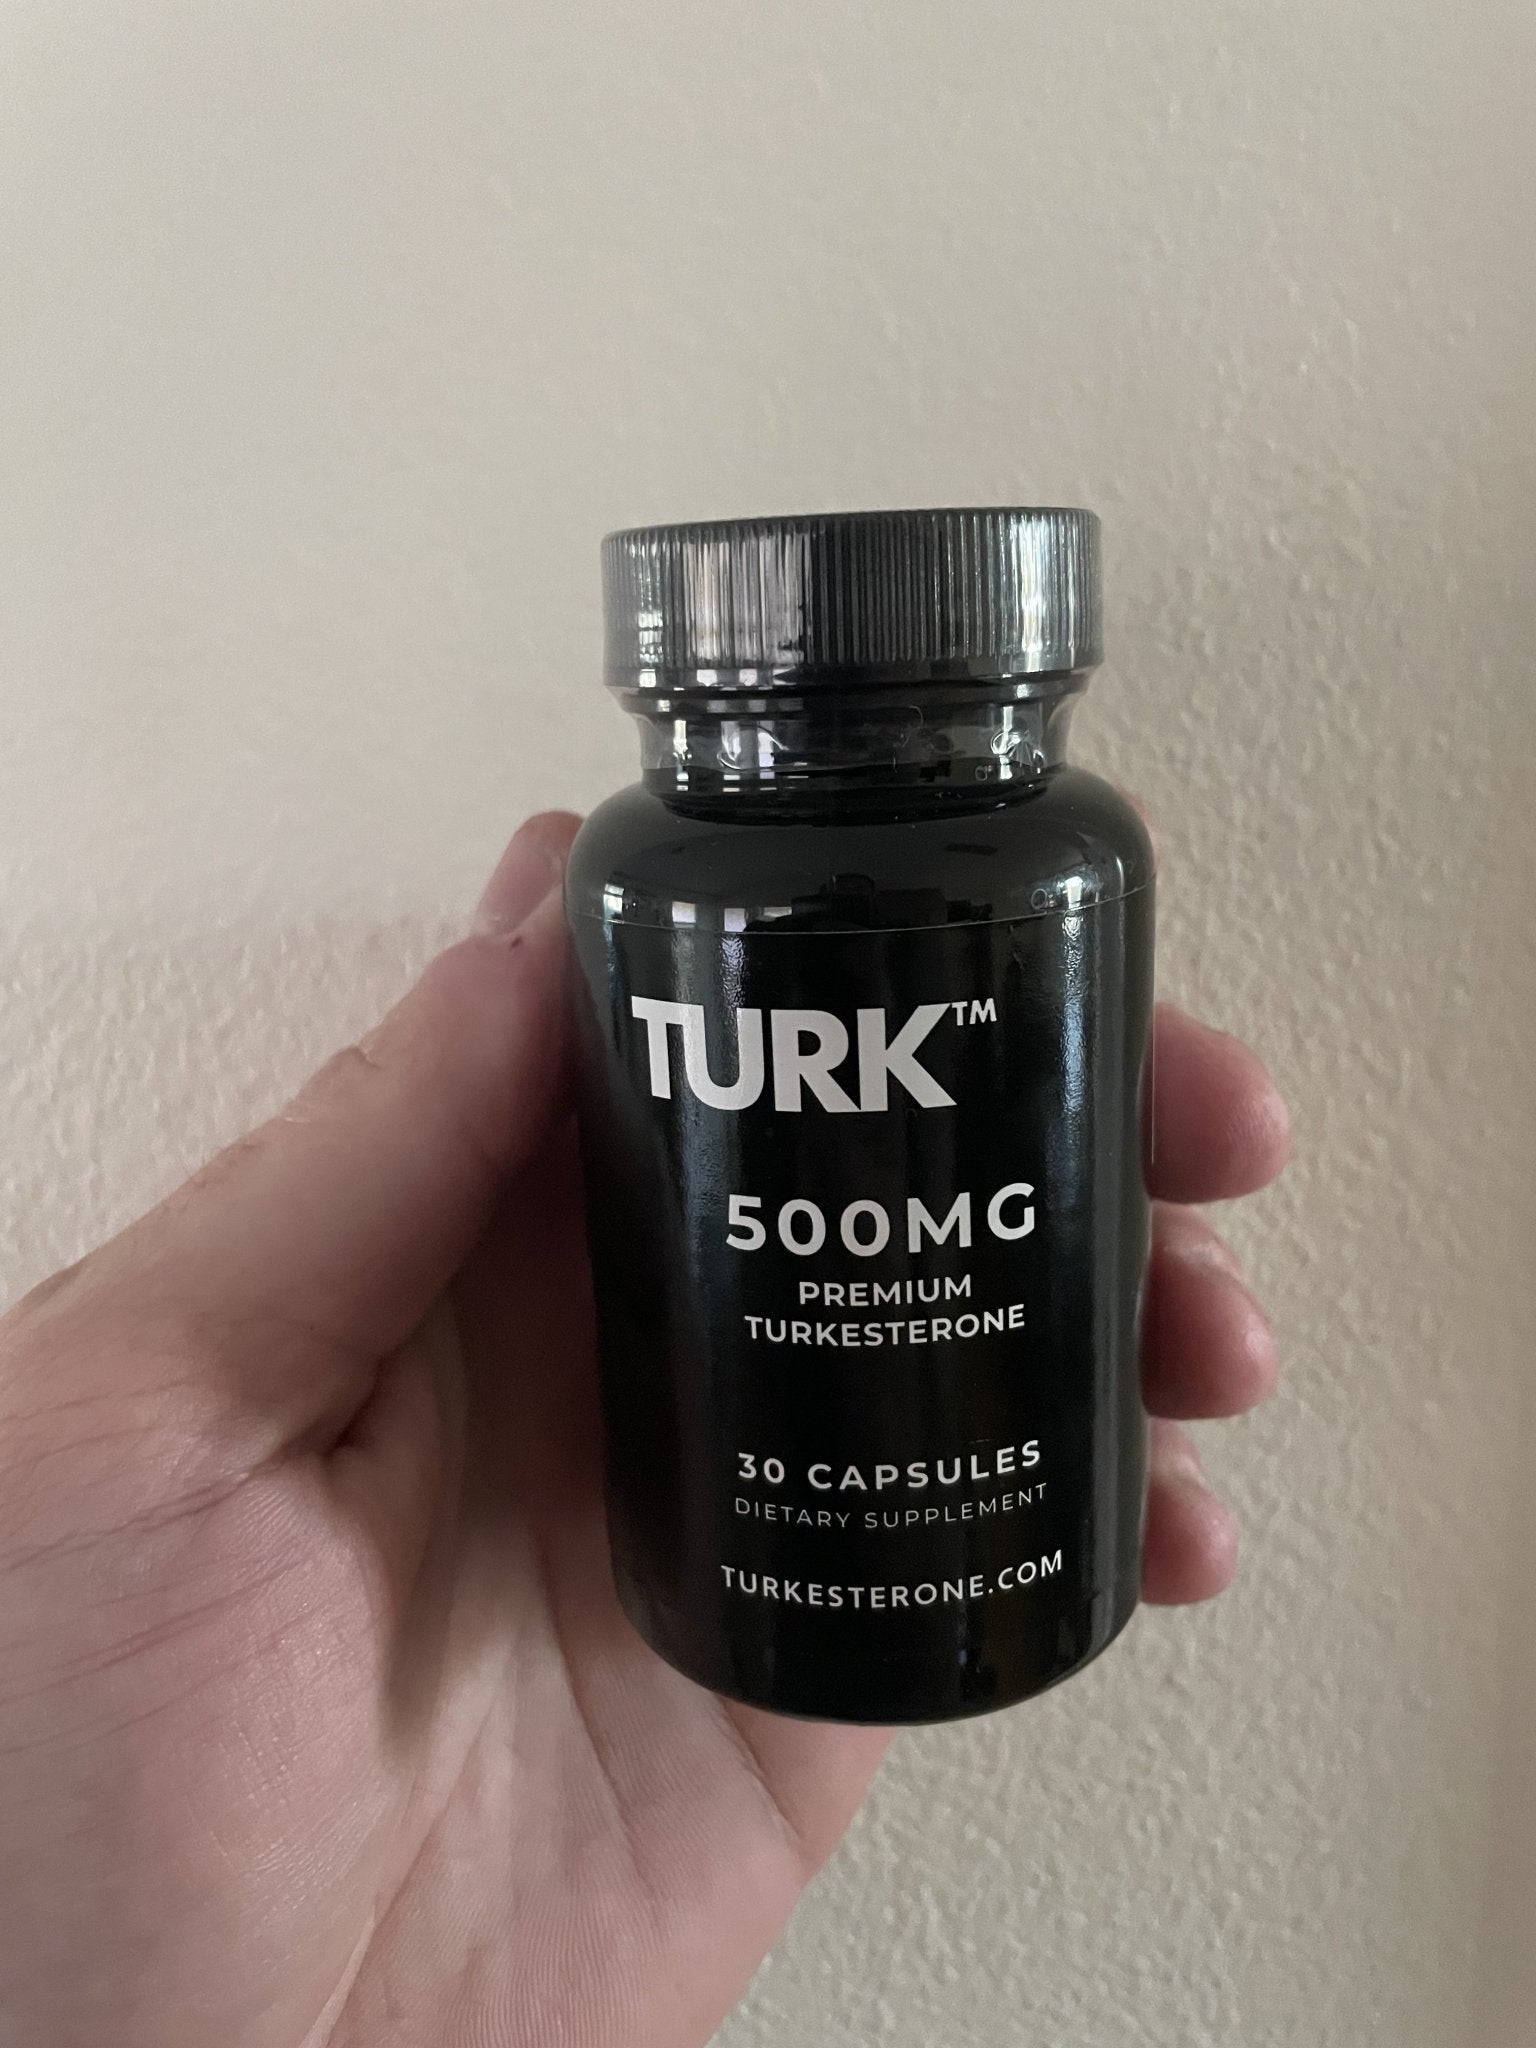 Turk™ - 500mg Premium Turkesterone (Ajuga turkestanica extract) - Turkesterone